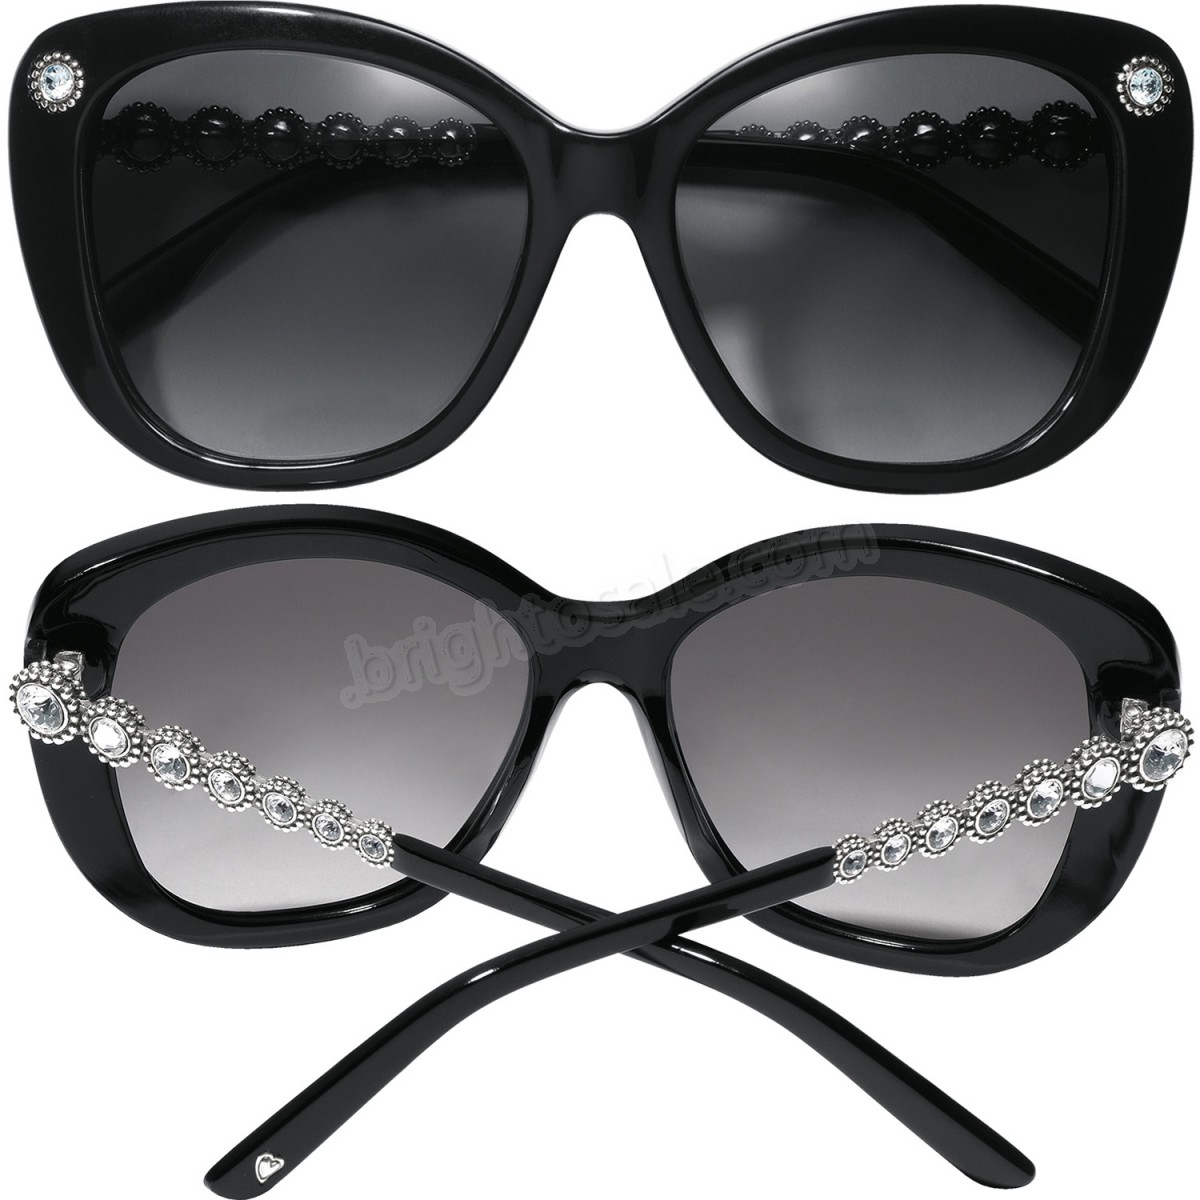 Brighton Collectibles & Online Discount Mamma Mia Sunglasses - -2